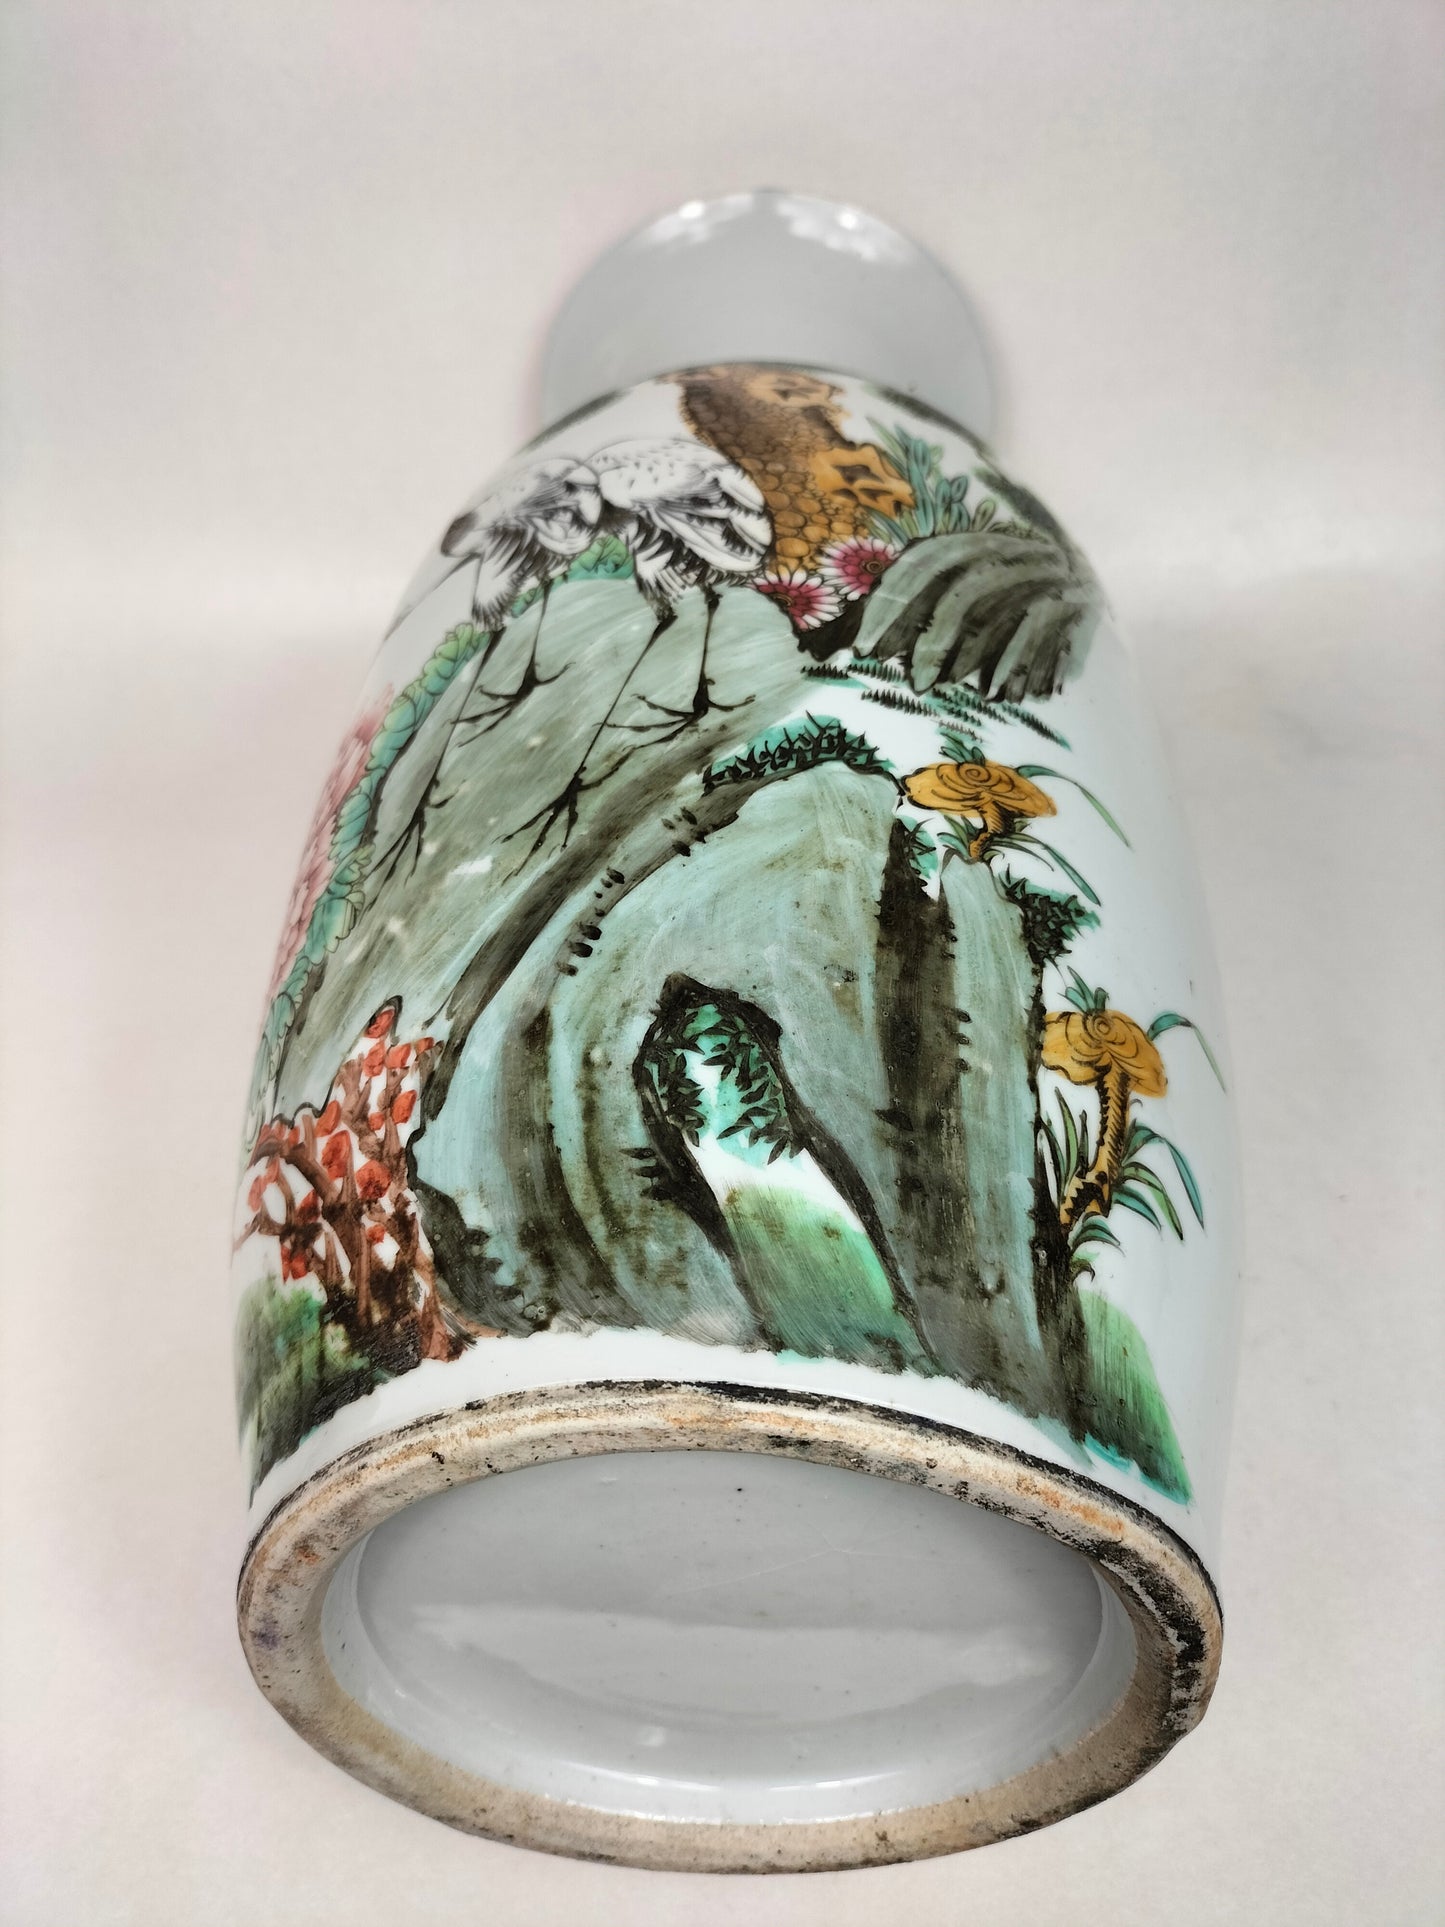 Grand vase chinois ancien à décor de grues et de fleurs // Période République (1912-1949)